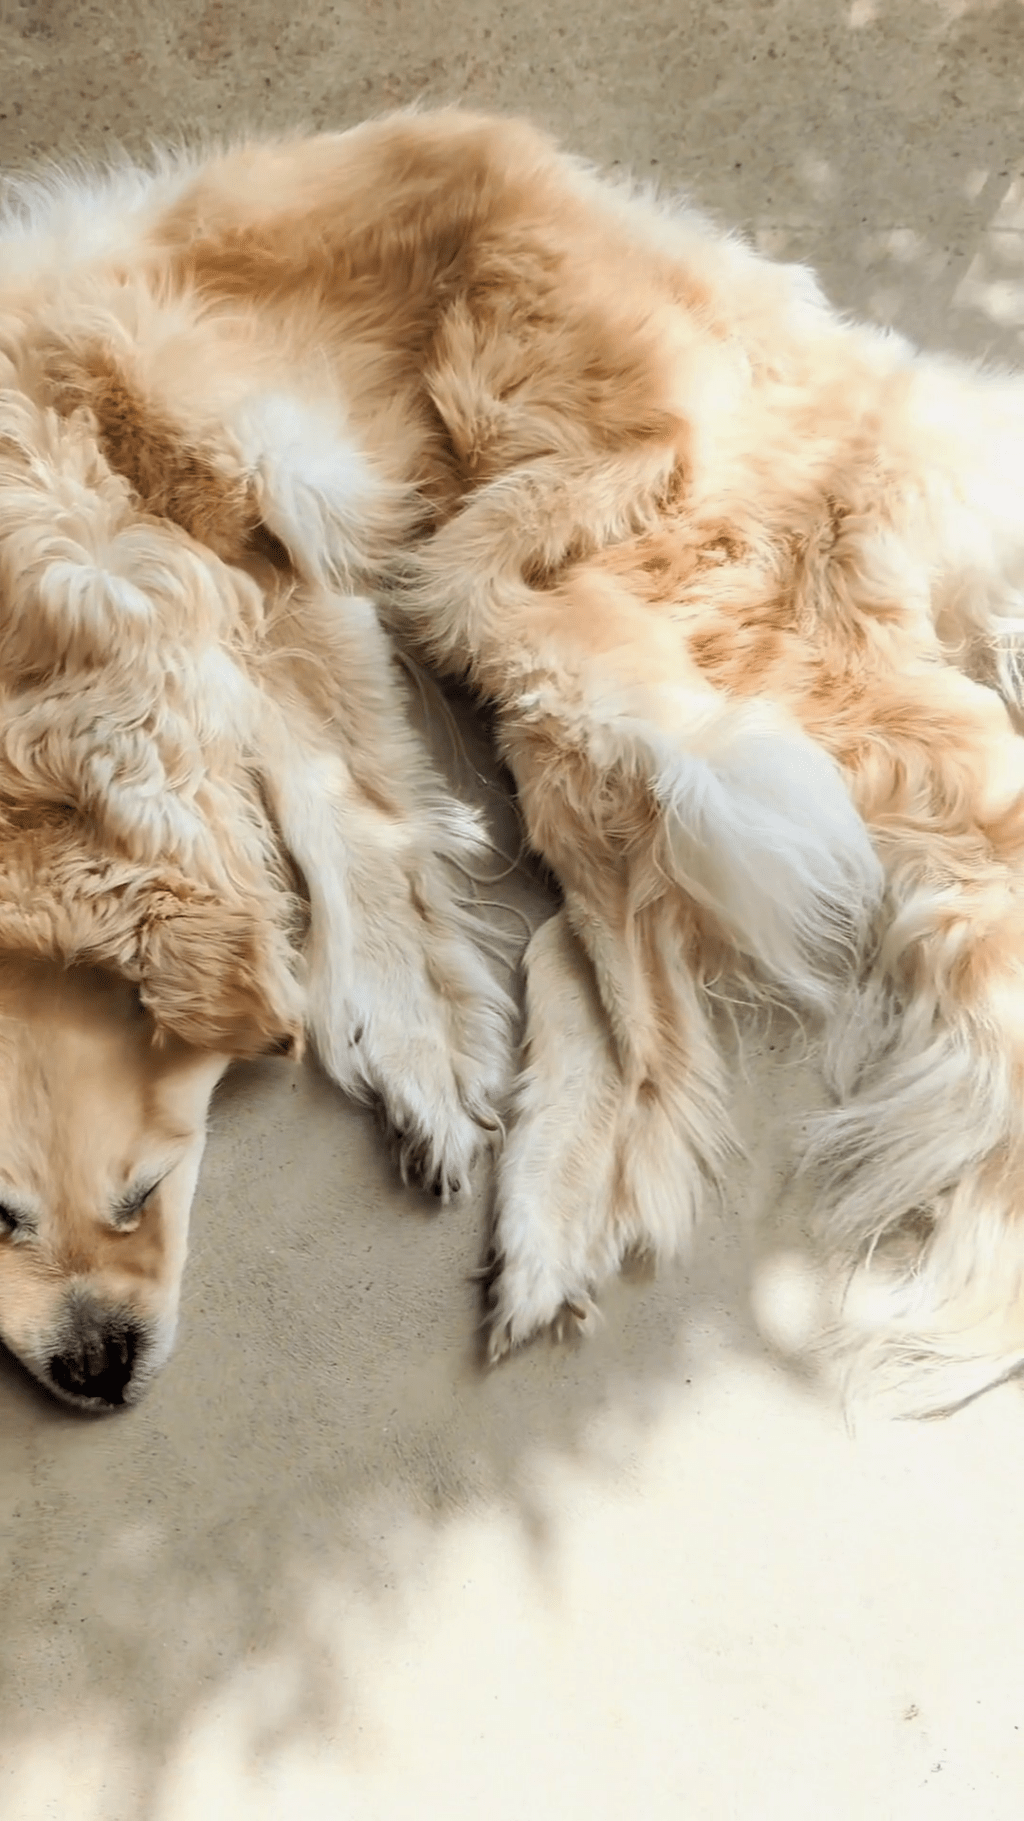 澳洲家庭将过世金毛寻回犬做成地毯，掀网上论战。